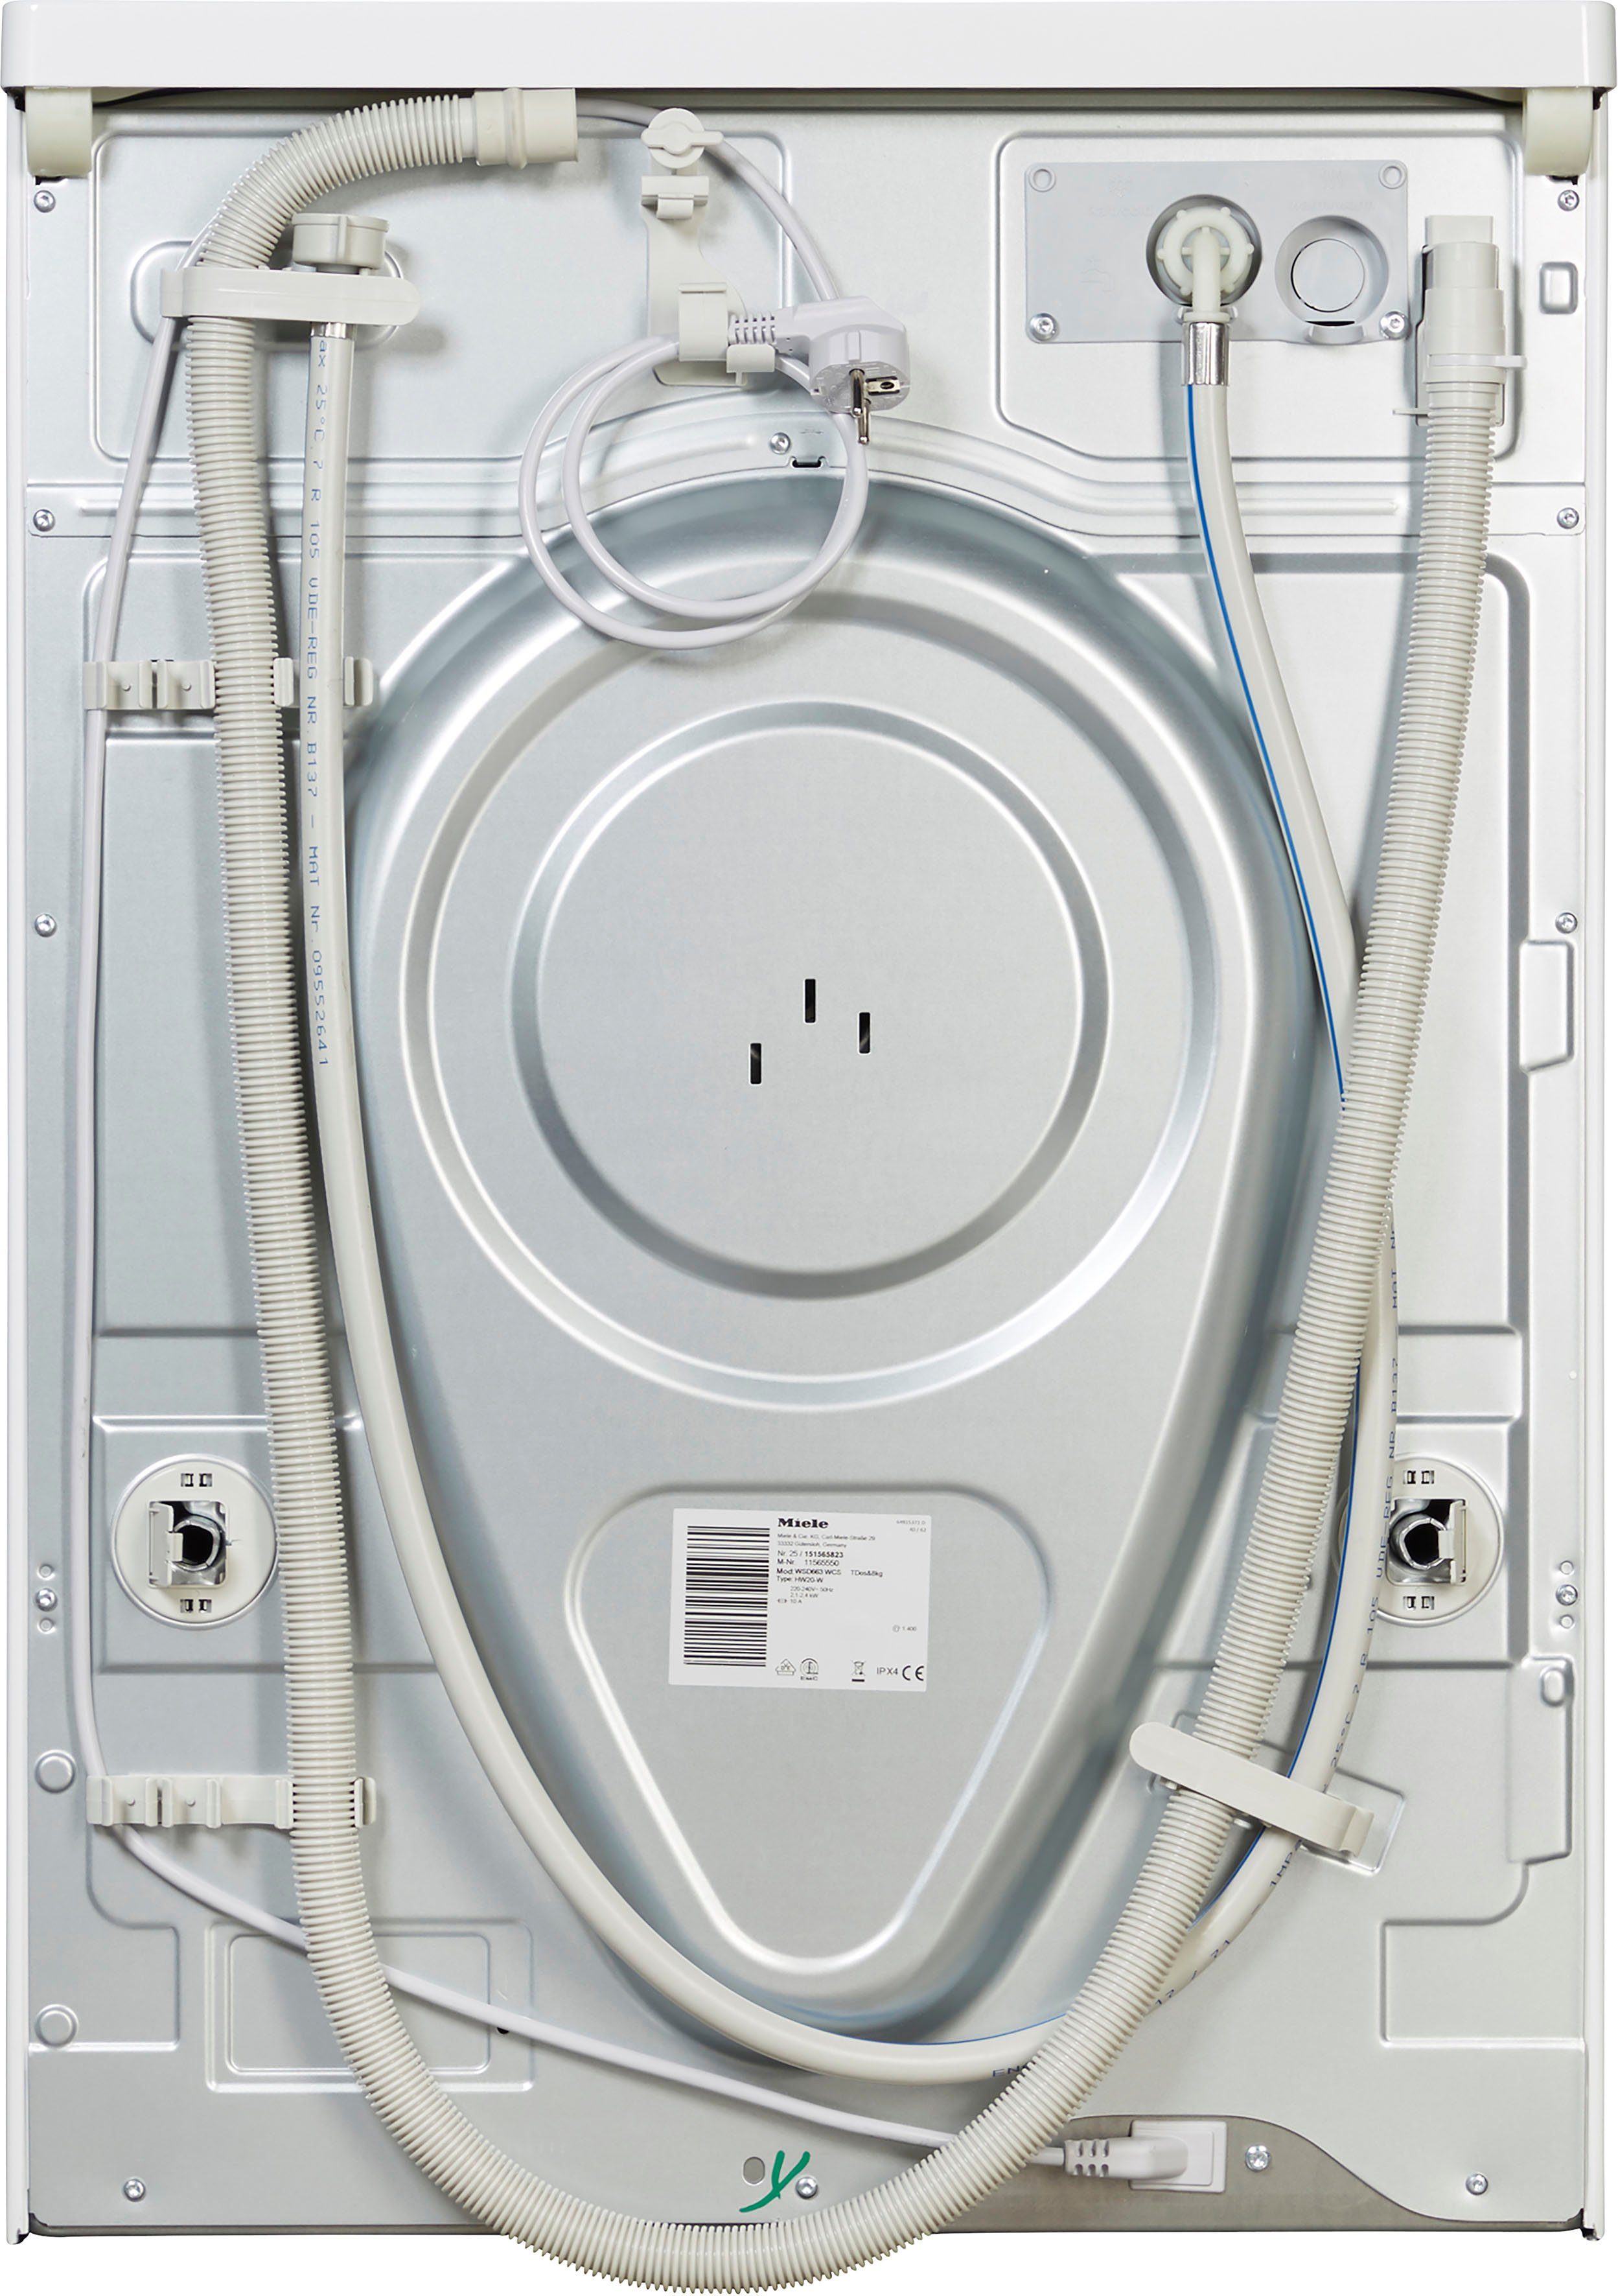 Miele Waschmaschine ModernLife WSD663 kg, U/min, Waschmitteldosierung zur TwinDos WCS 8 1400 automatischen TDos&8kg